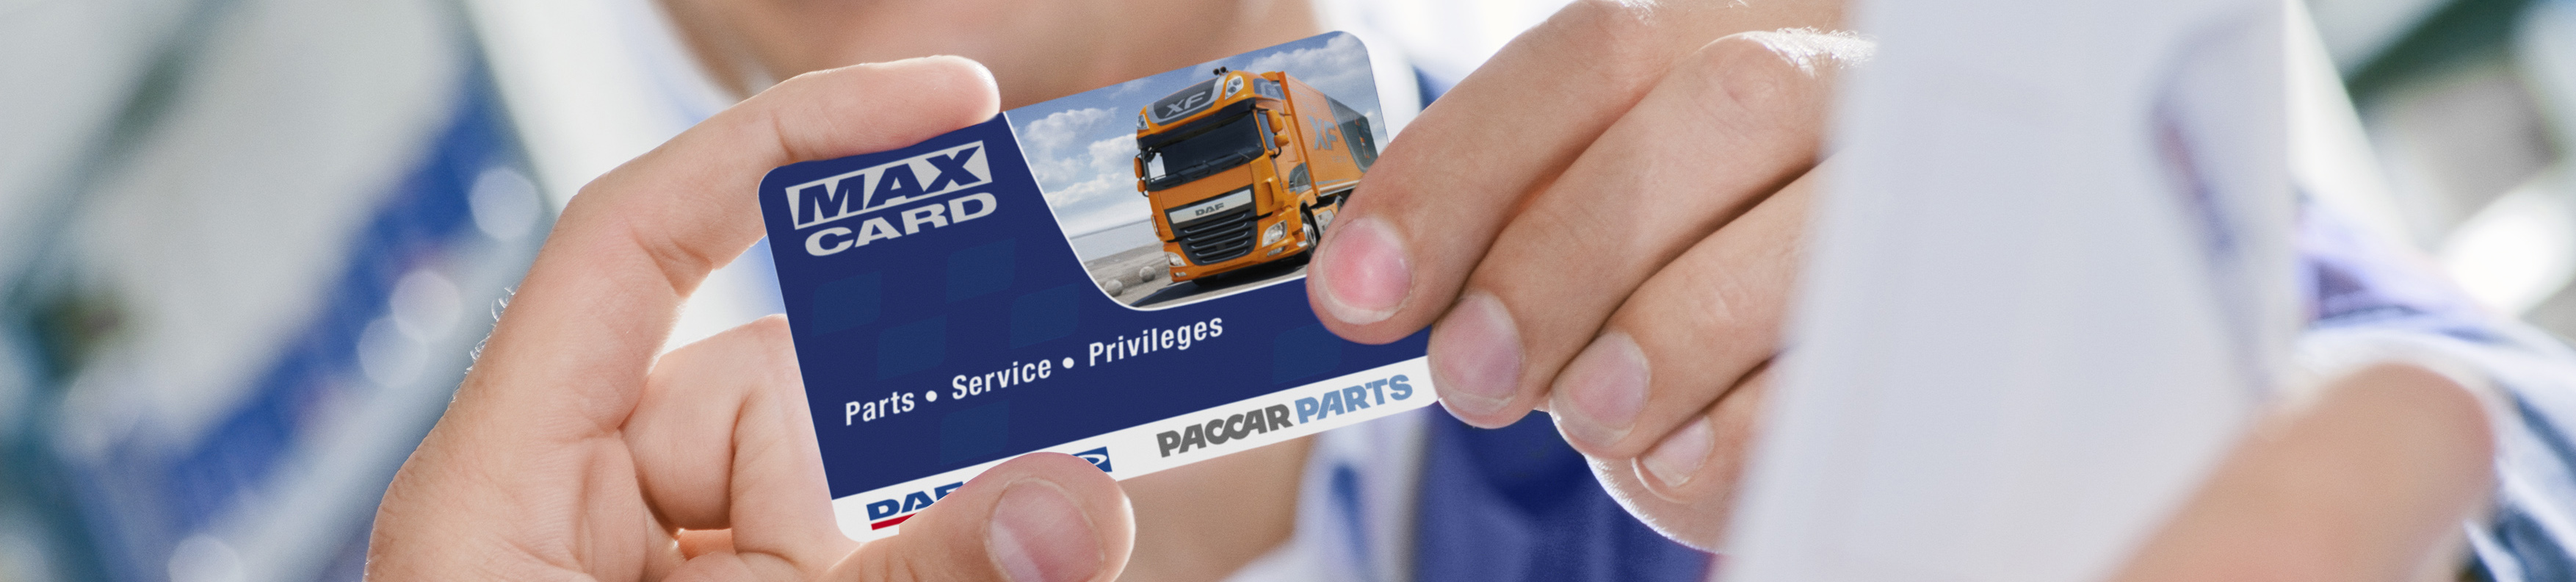 Max card- DAF Trucks Ltd, United Kingdom